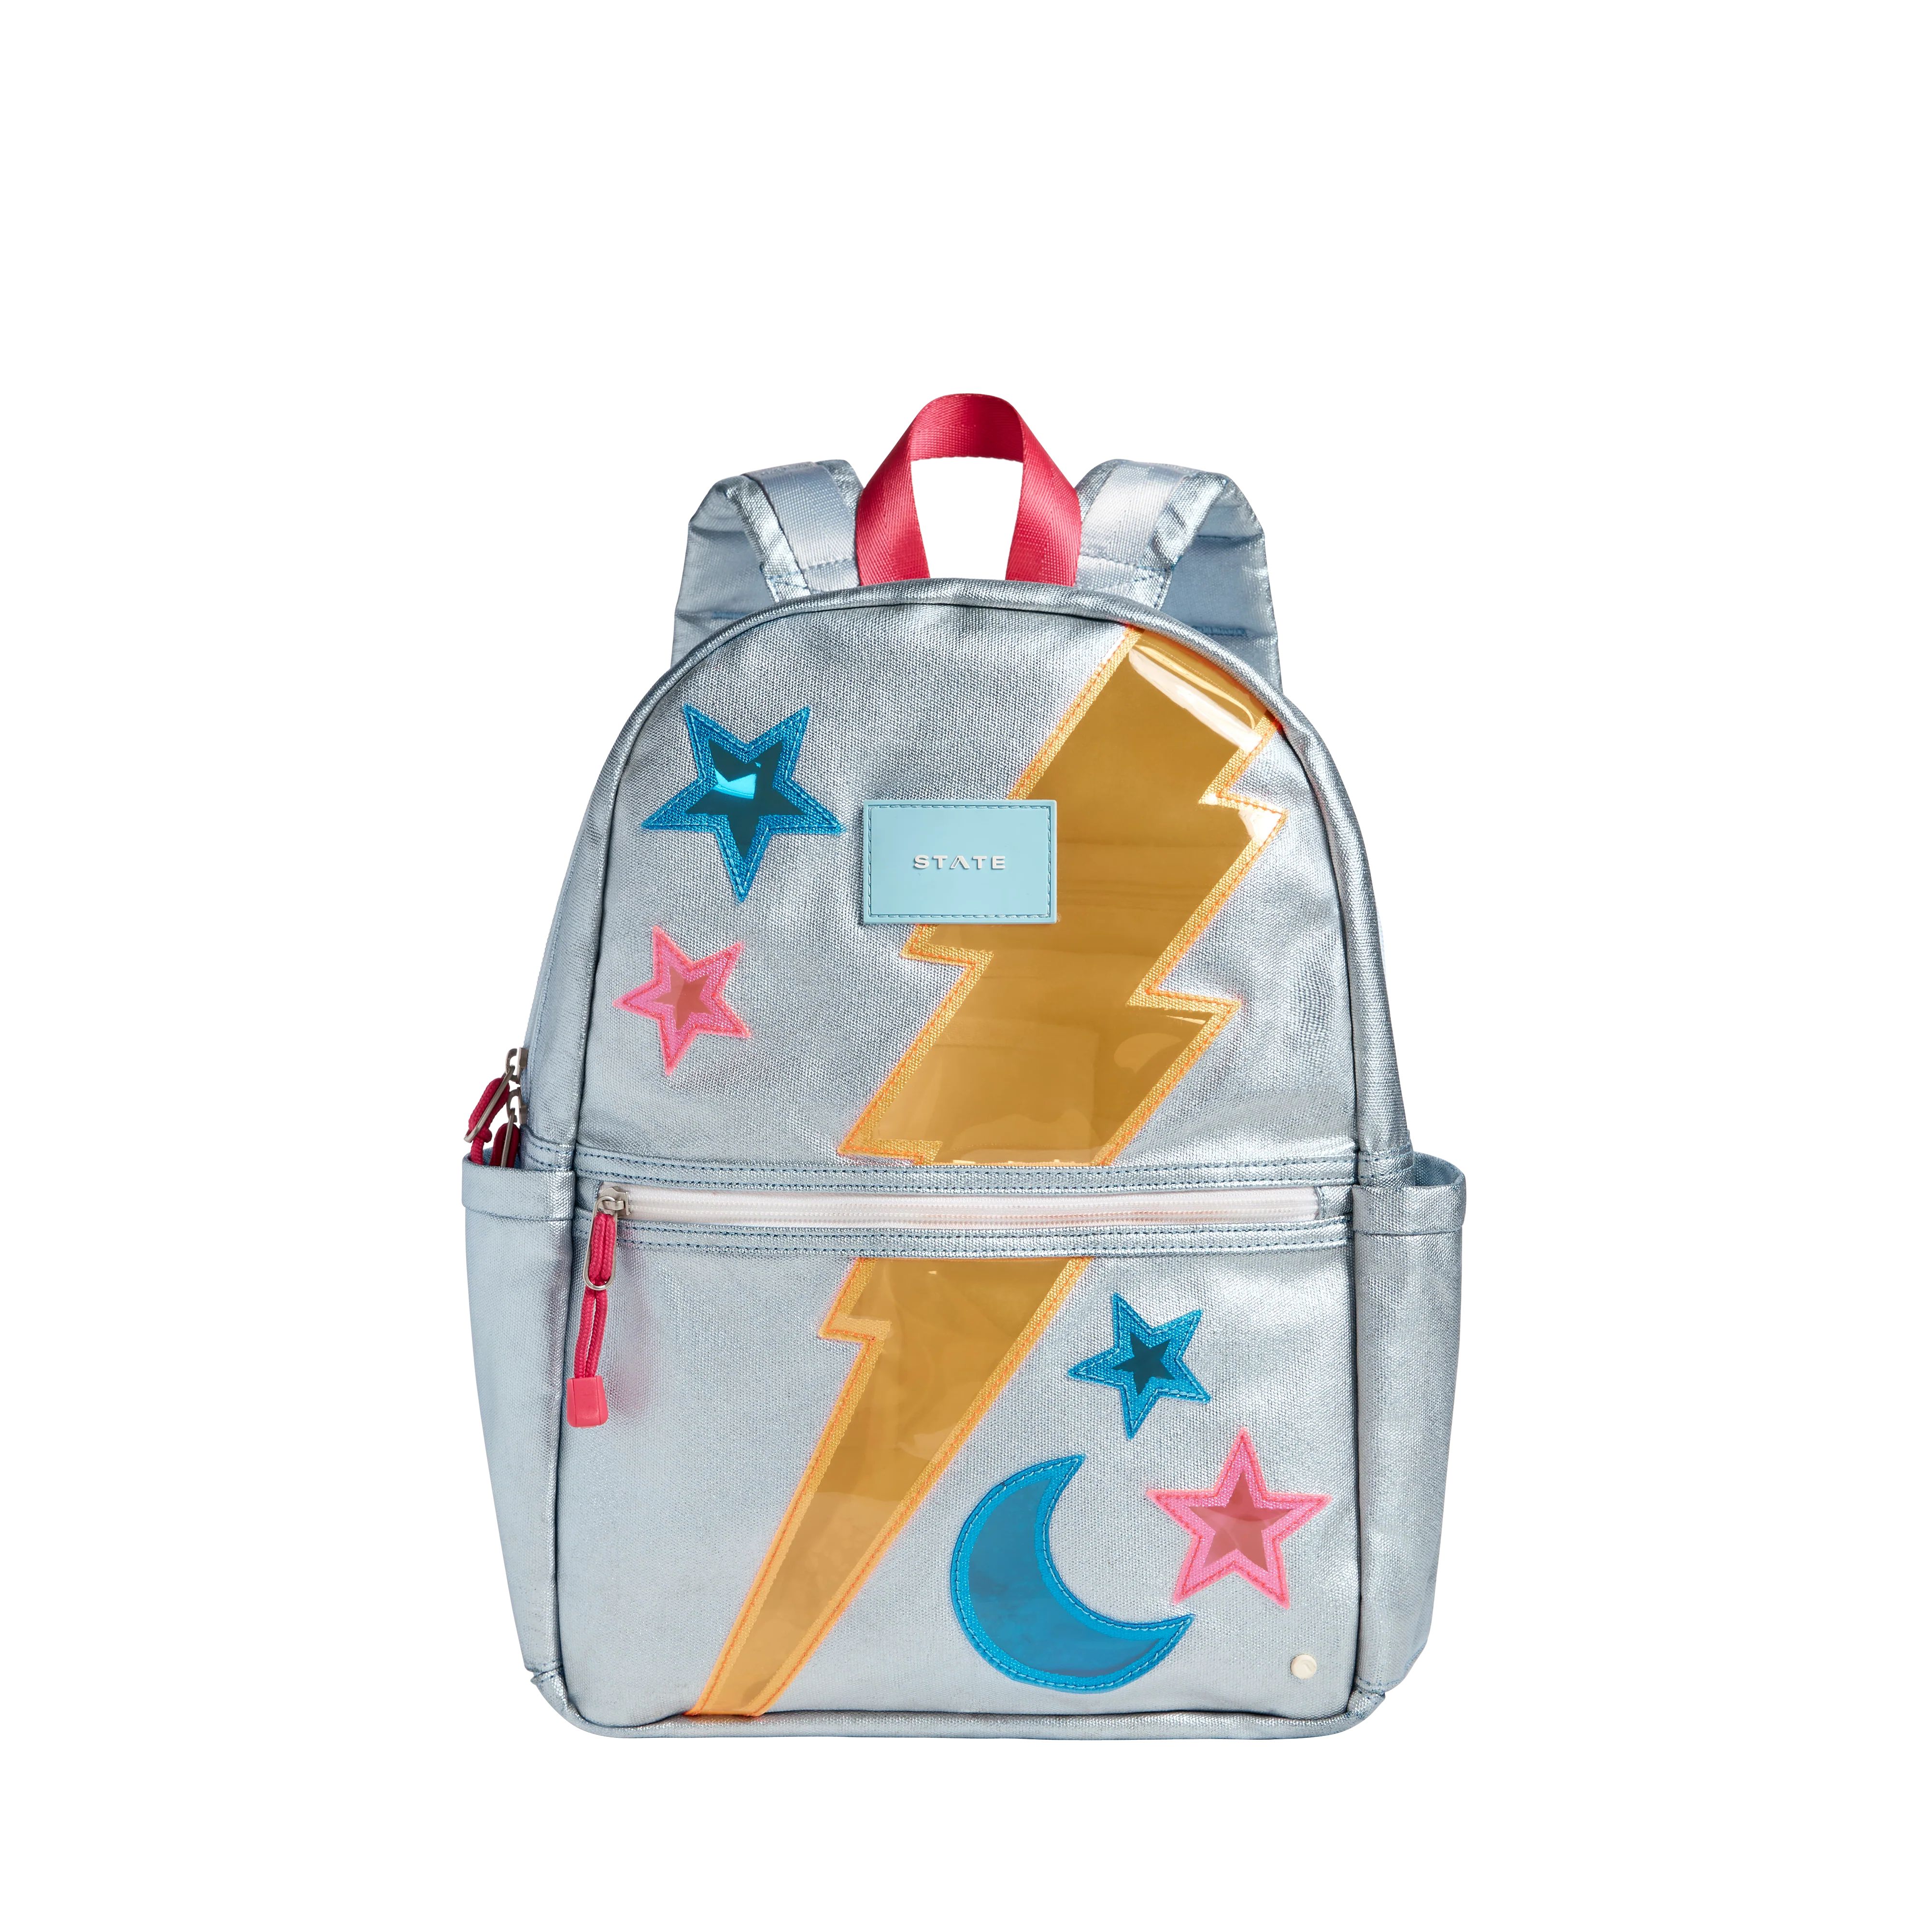 STATE Bags | Kane Kids Backpack Metallic Lightning | STATE Bags